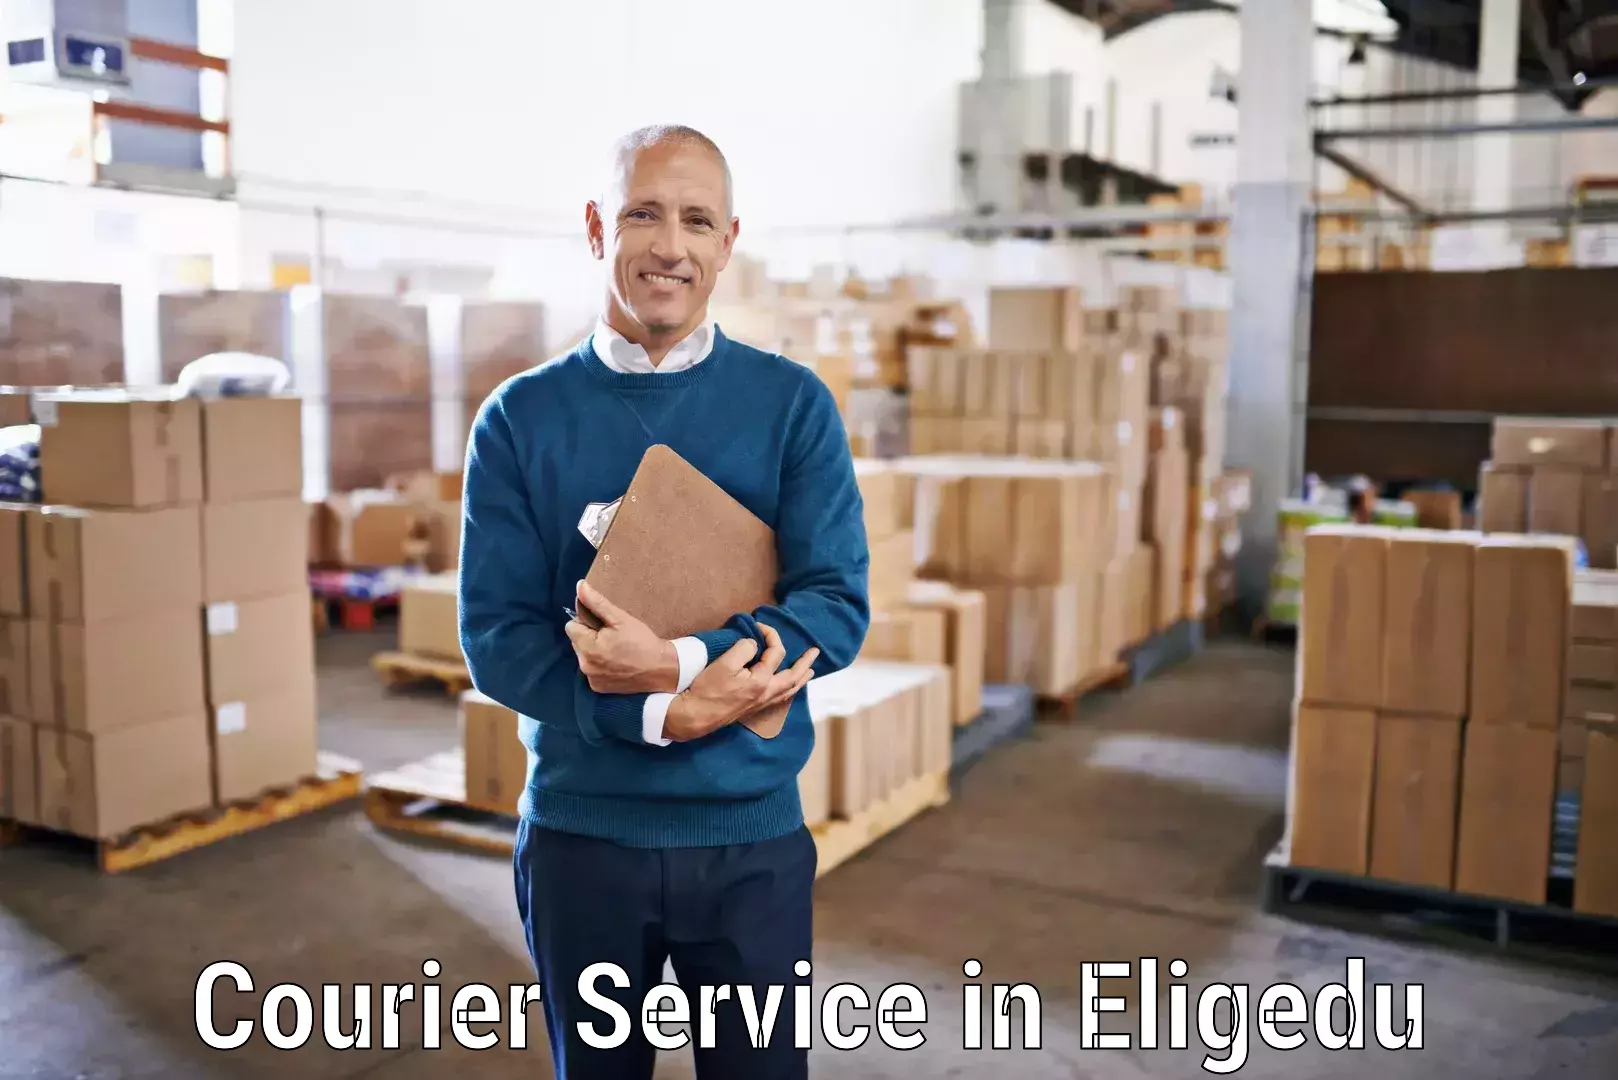 Streamlined logistics management in Eligedu